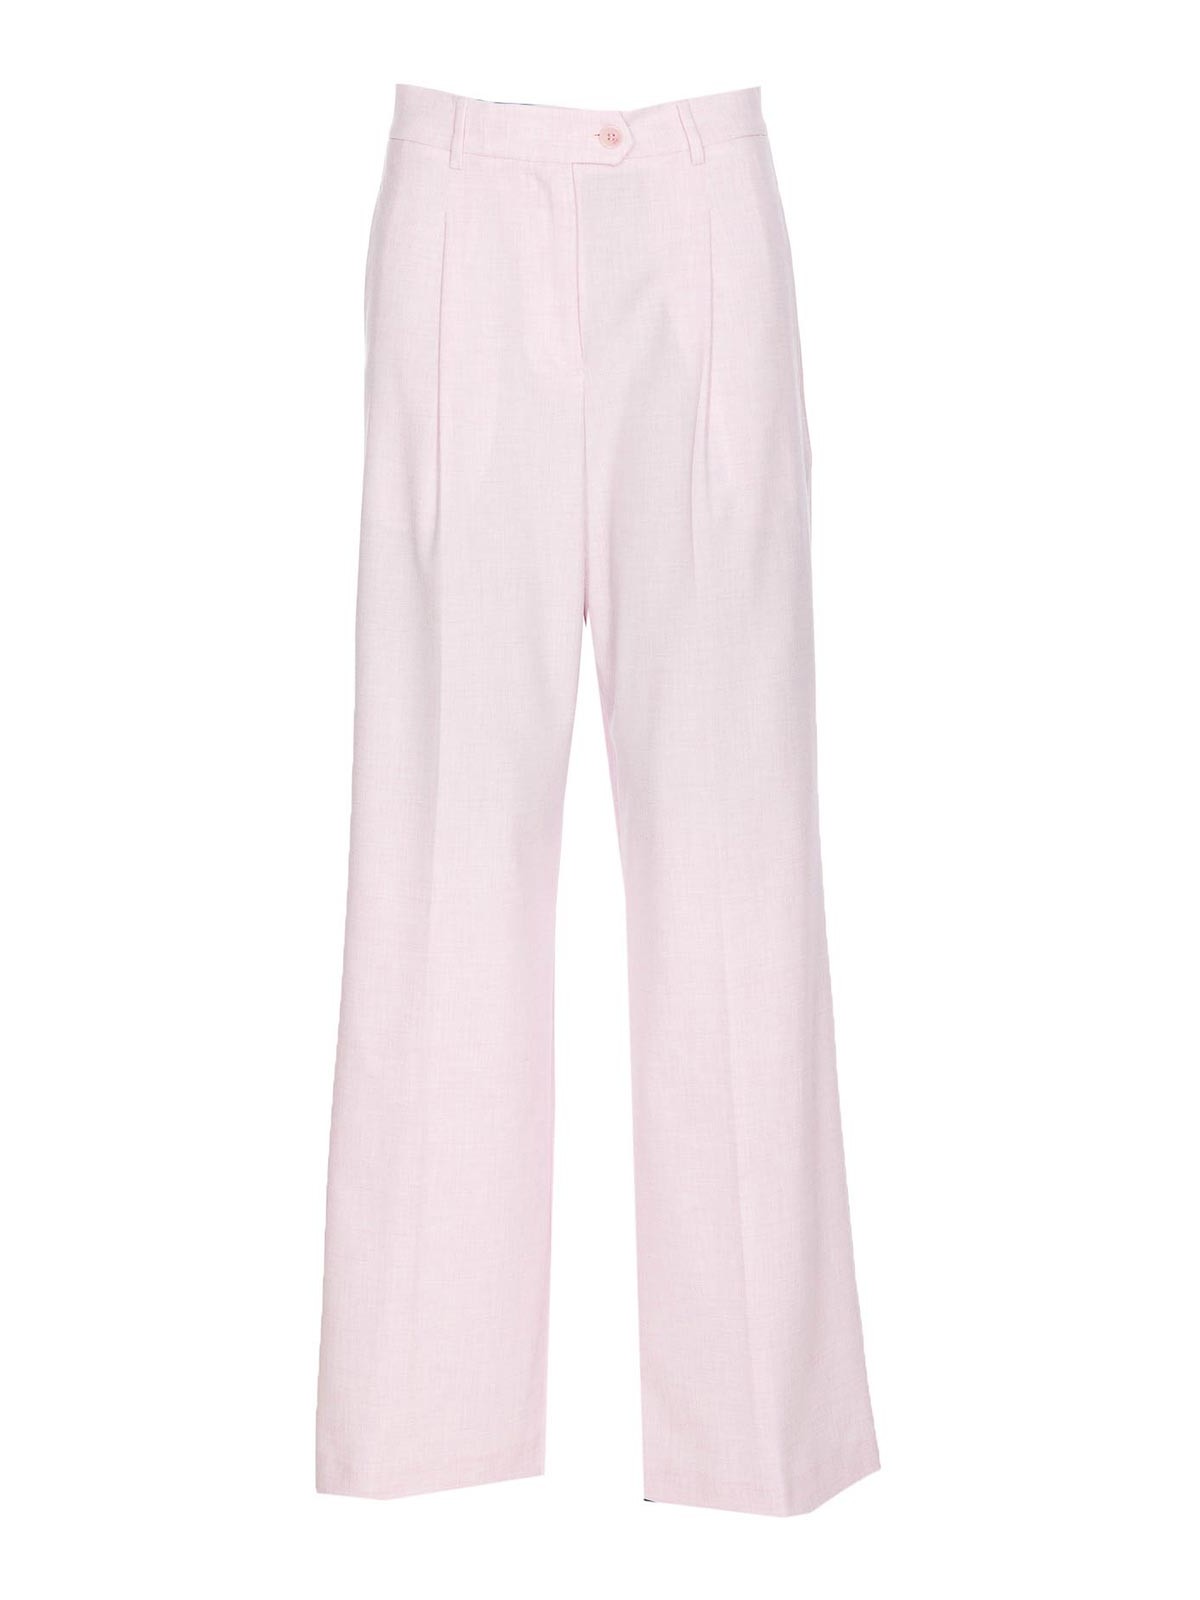 Liu •jo Pink Trousers Frontal Zip In Nude & Neutrals